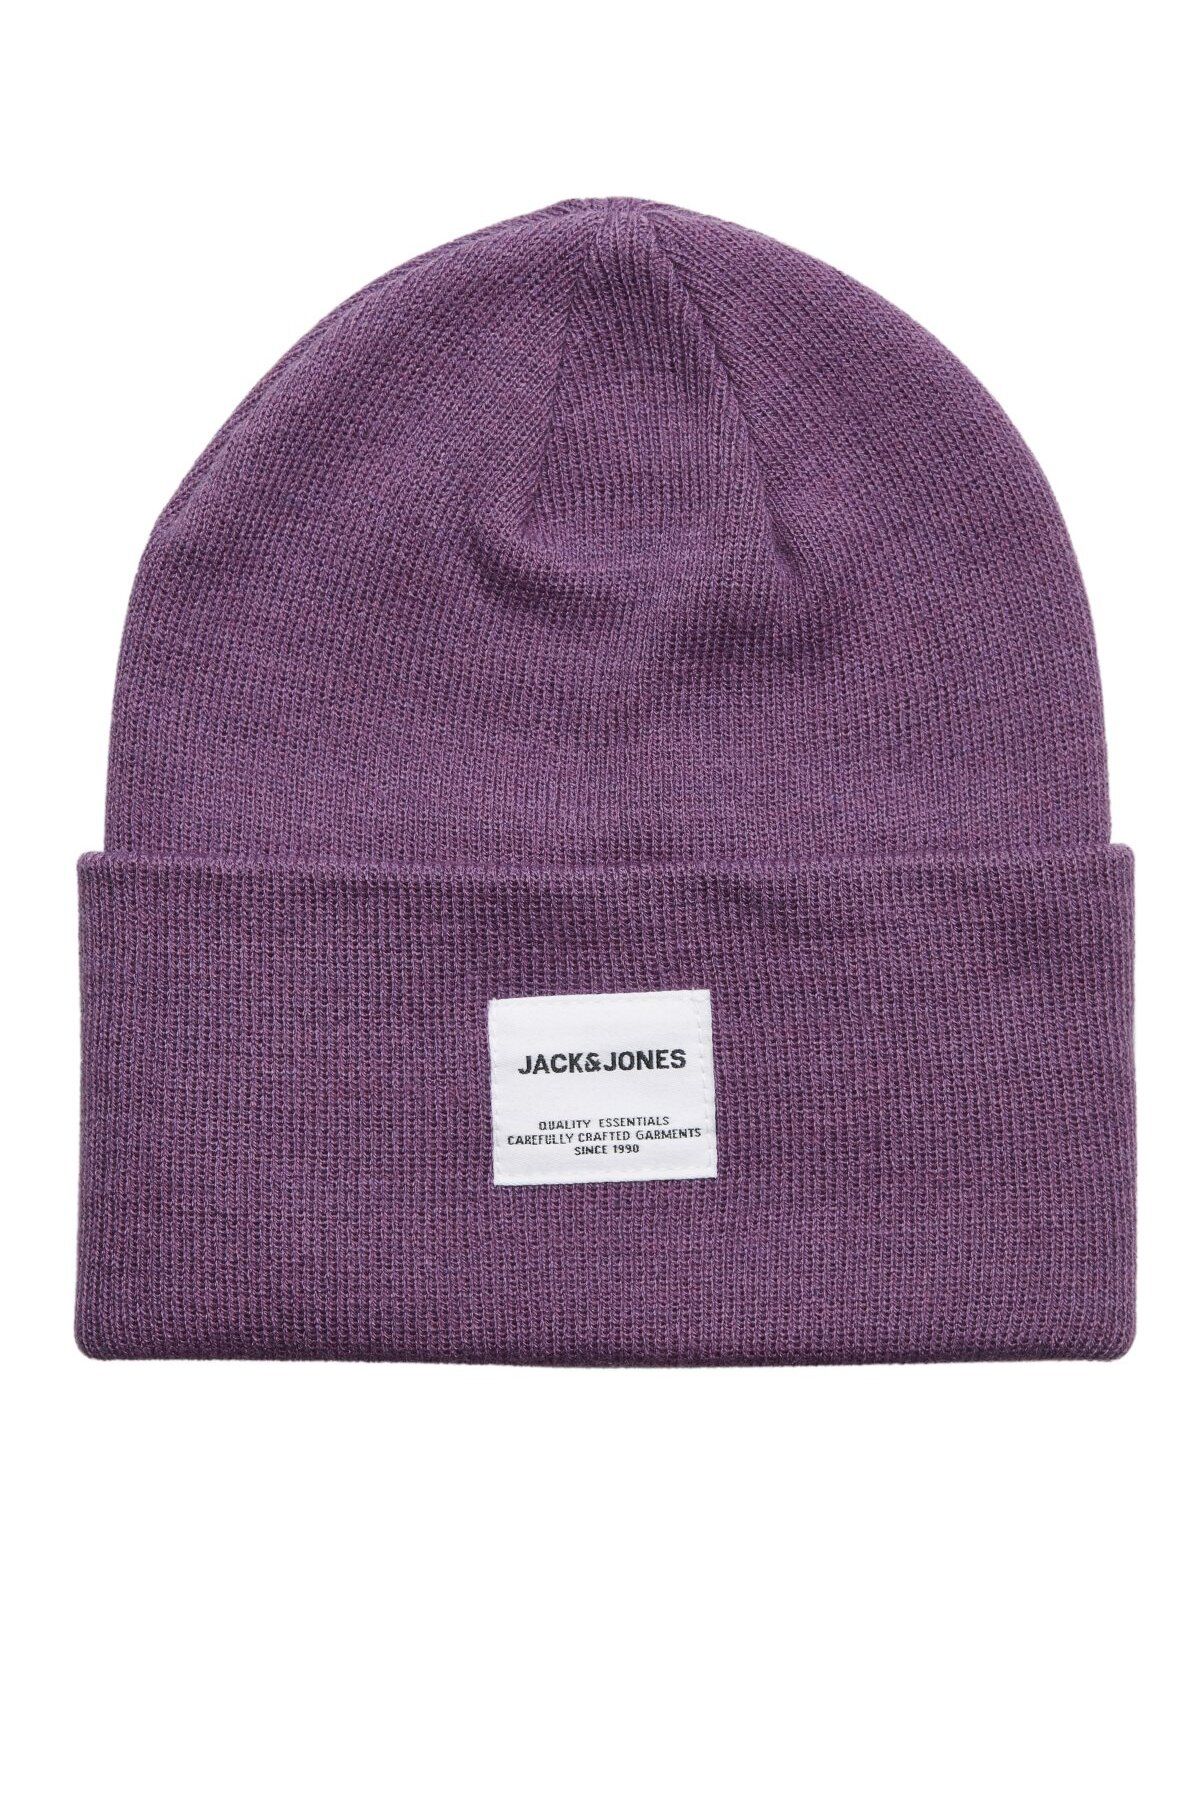 Jack & Jones Jaclong Knit Erkek Mor Bere 12150627-Purple